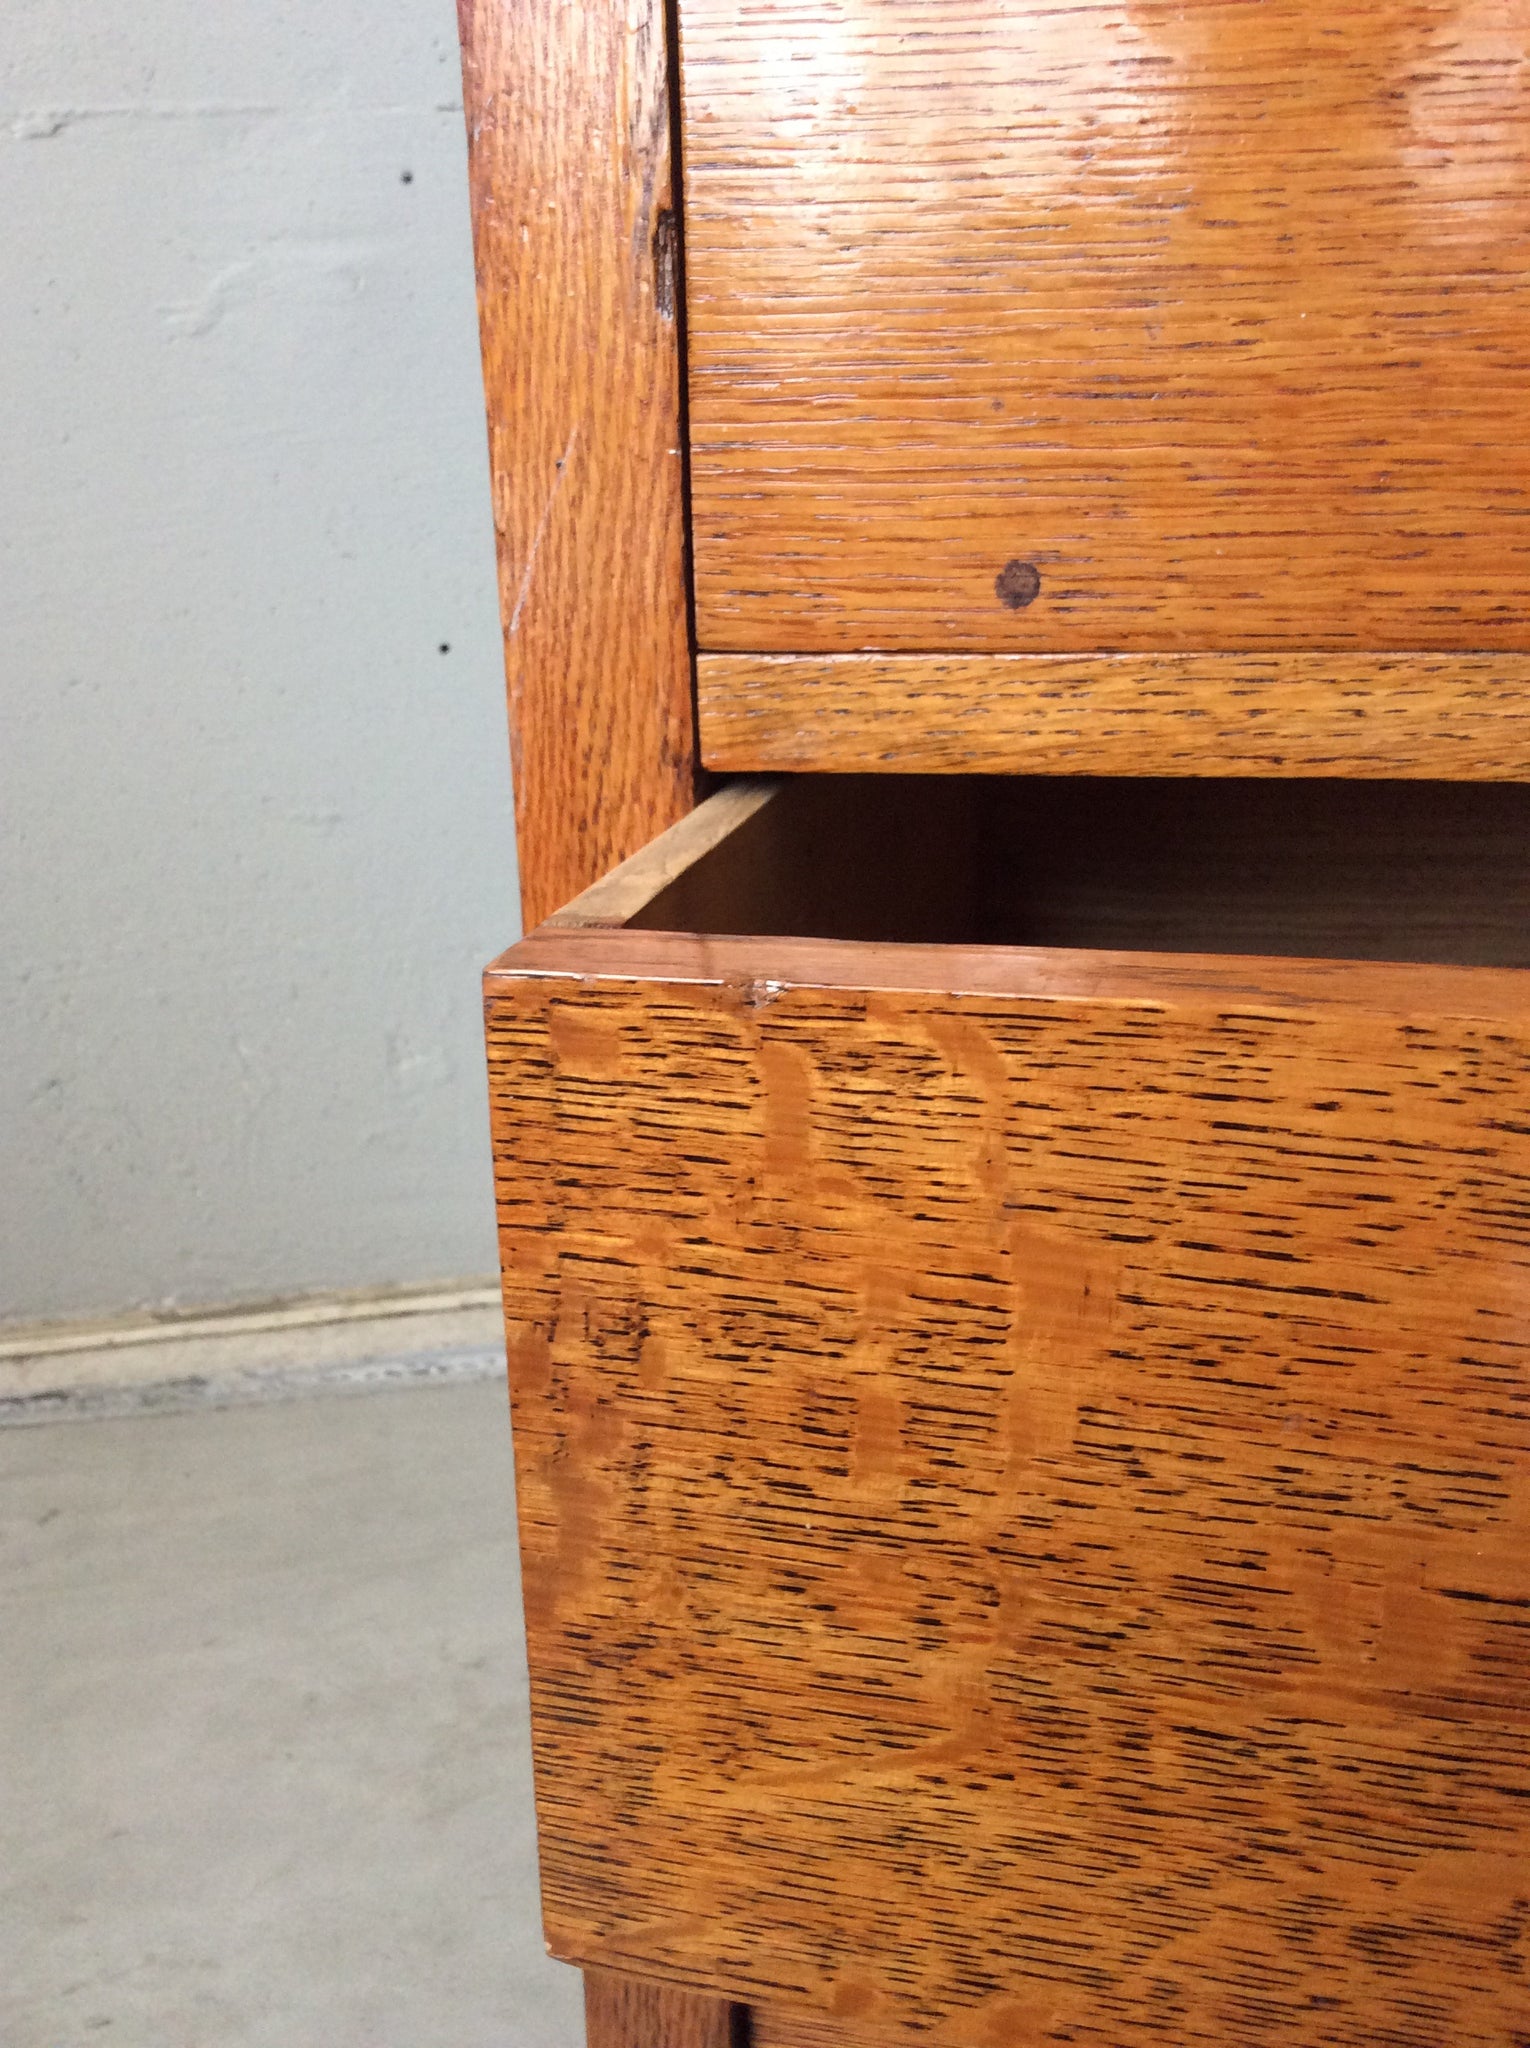 オーク チェスト キャビネット / oak chest cabinet #0105